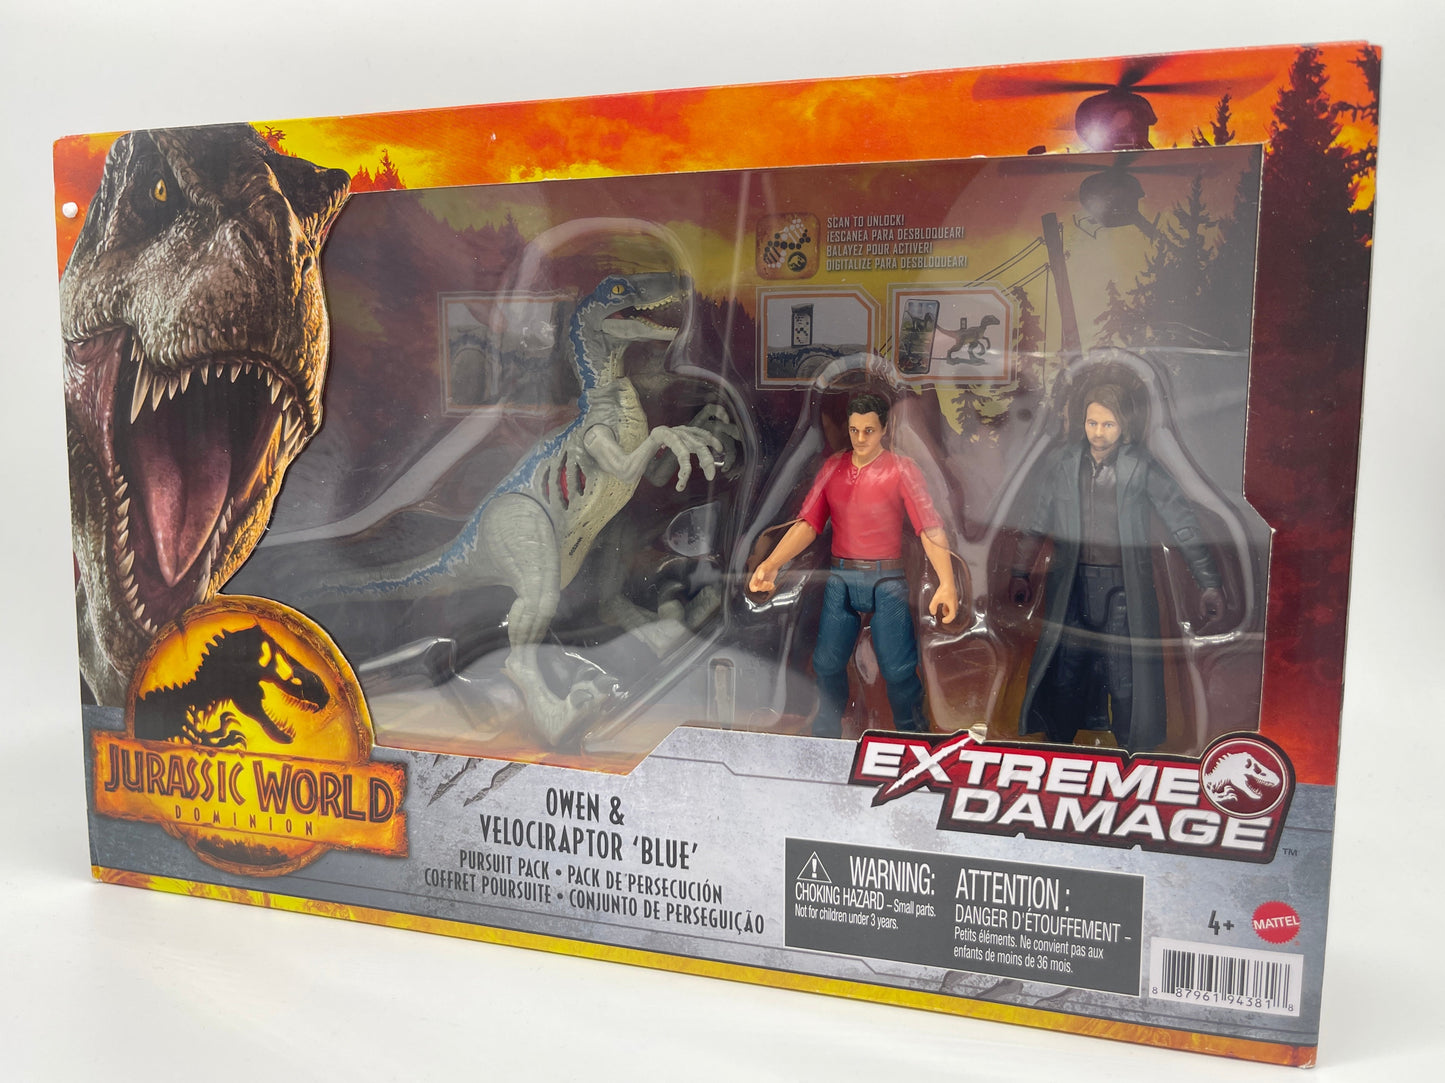 Jurassic World Dominion "Owen & Velociraptor Blue Pursuit Pack" Extreme Damage